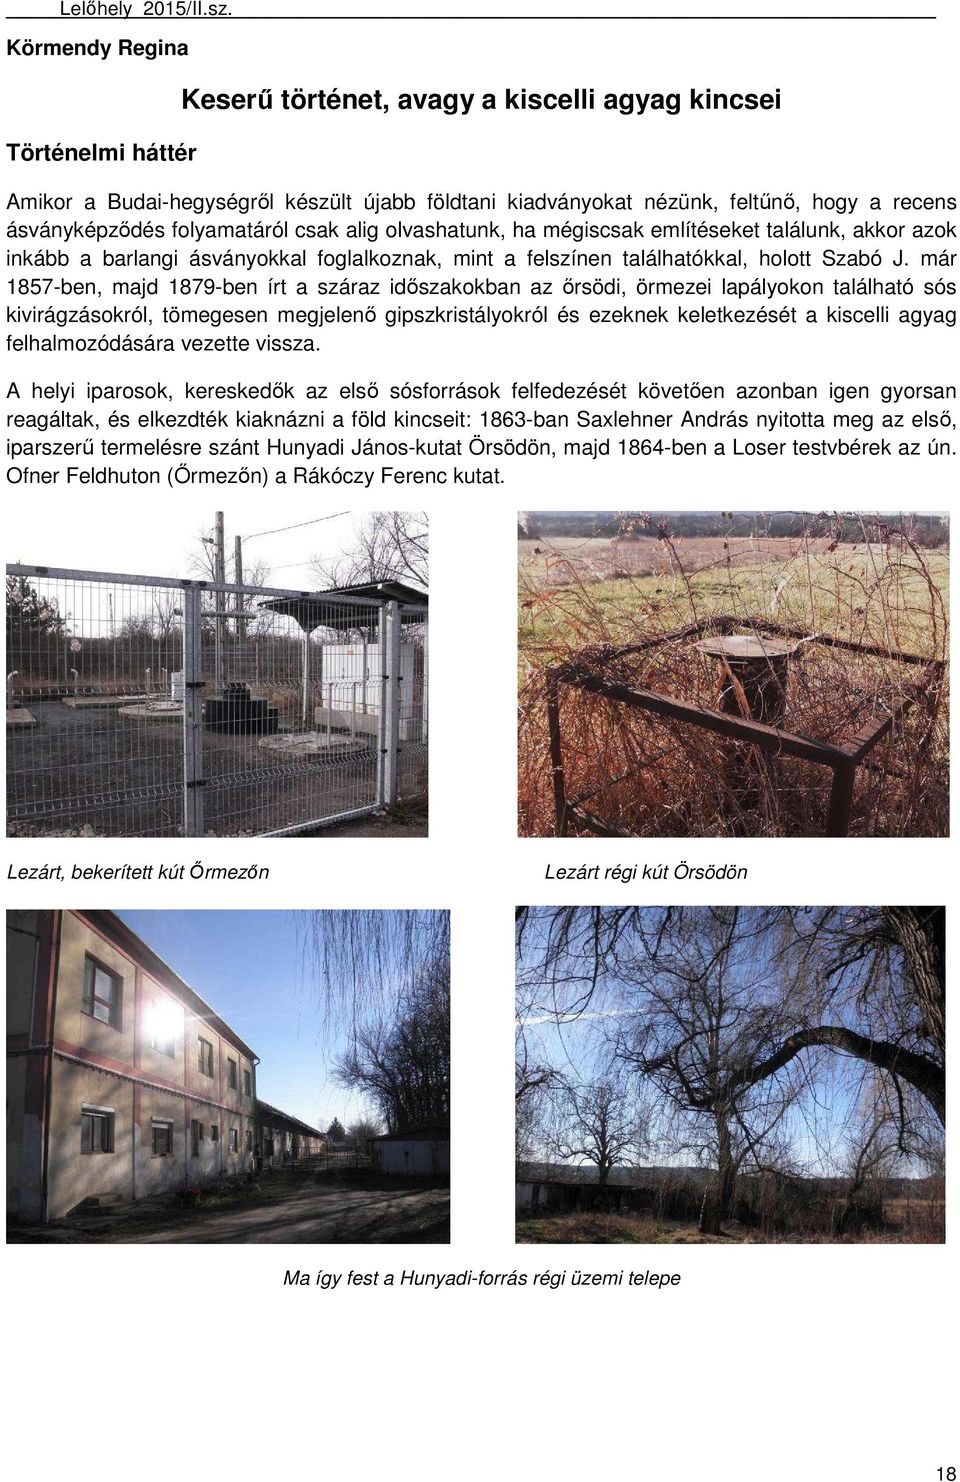 Tartalom évi hordalékkutatások a Visegrádi-hegységben...2. Keserű történet,  avagy a kiscelli agyag kincsei PDF Ingyenes letöltés